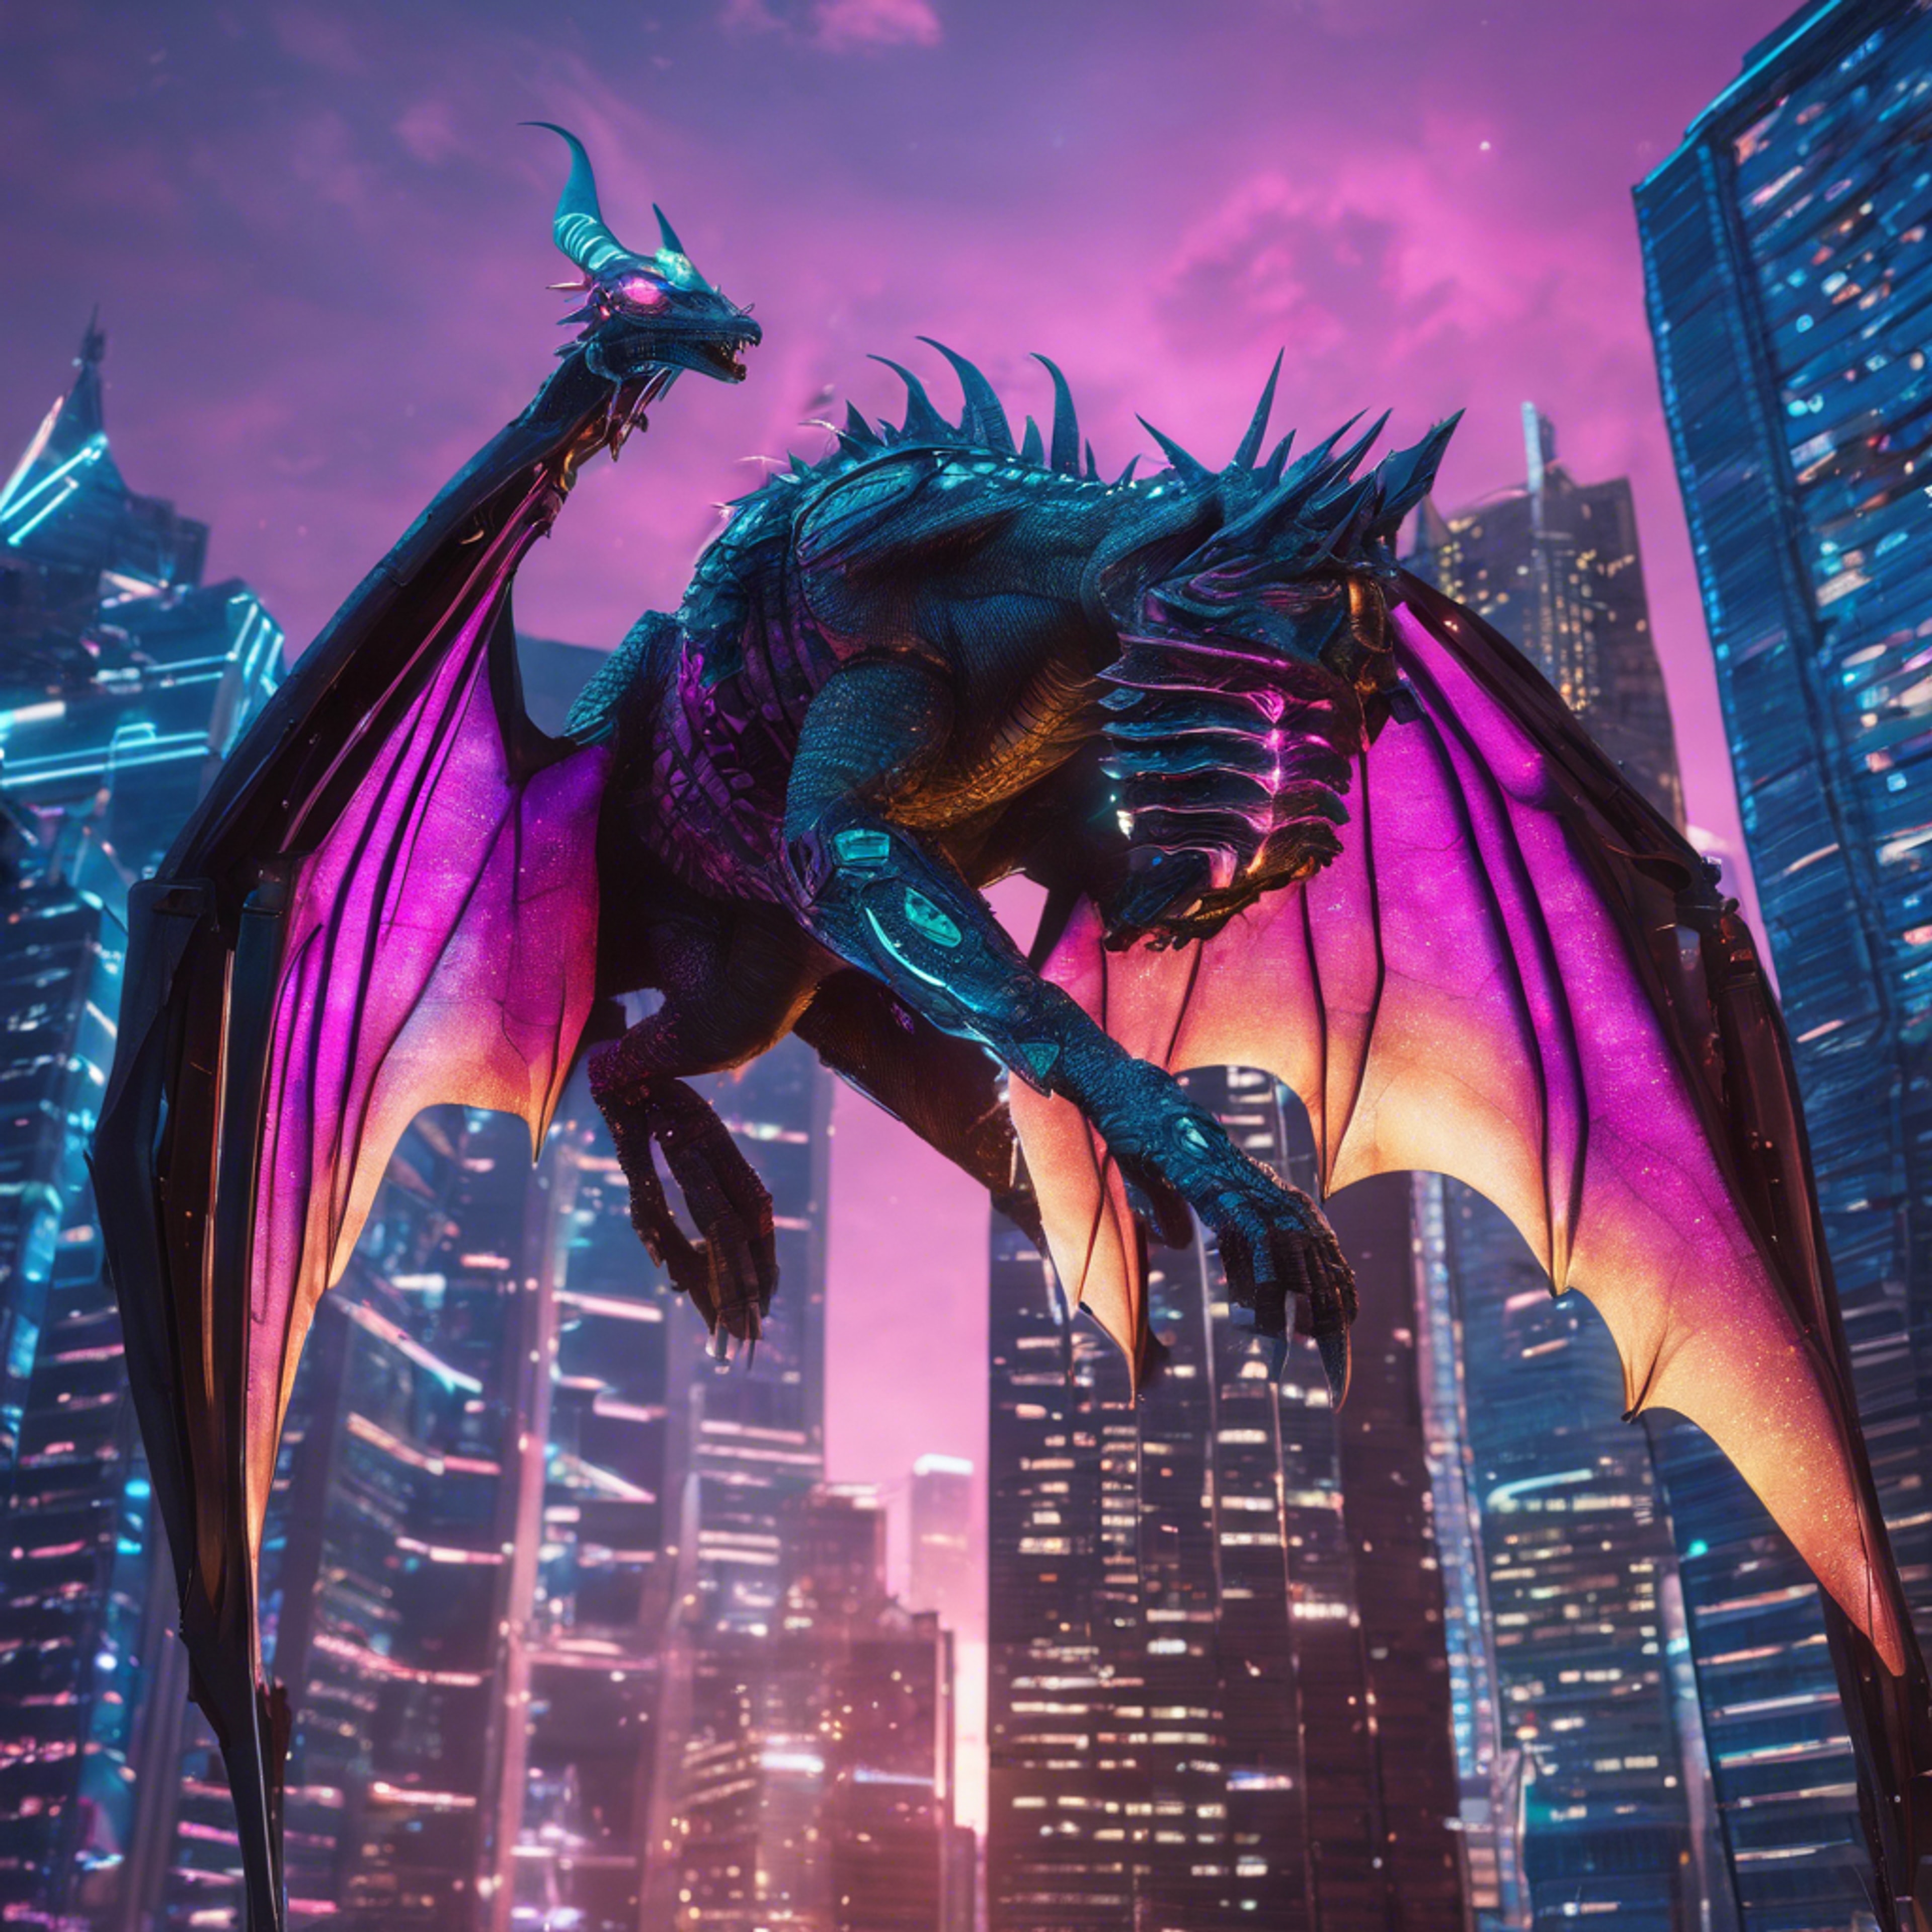 A Y2K themed cybernetic dragon soaring under neon-lit skyscrapers in a digital cityscape. 벽지[7348722ea6a94b7ba367]